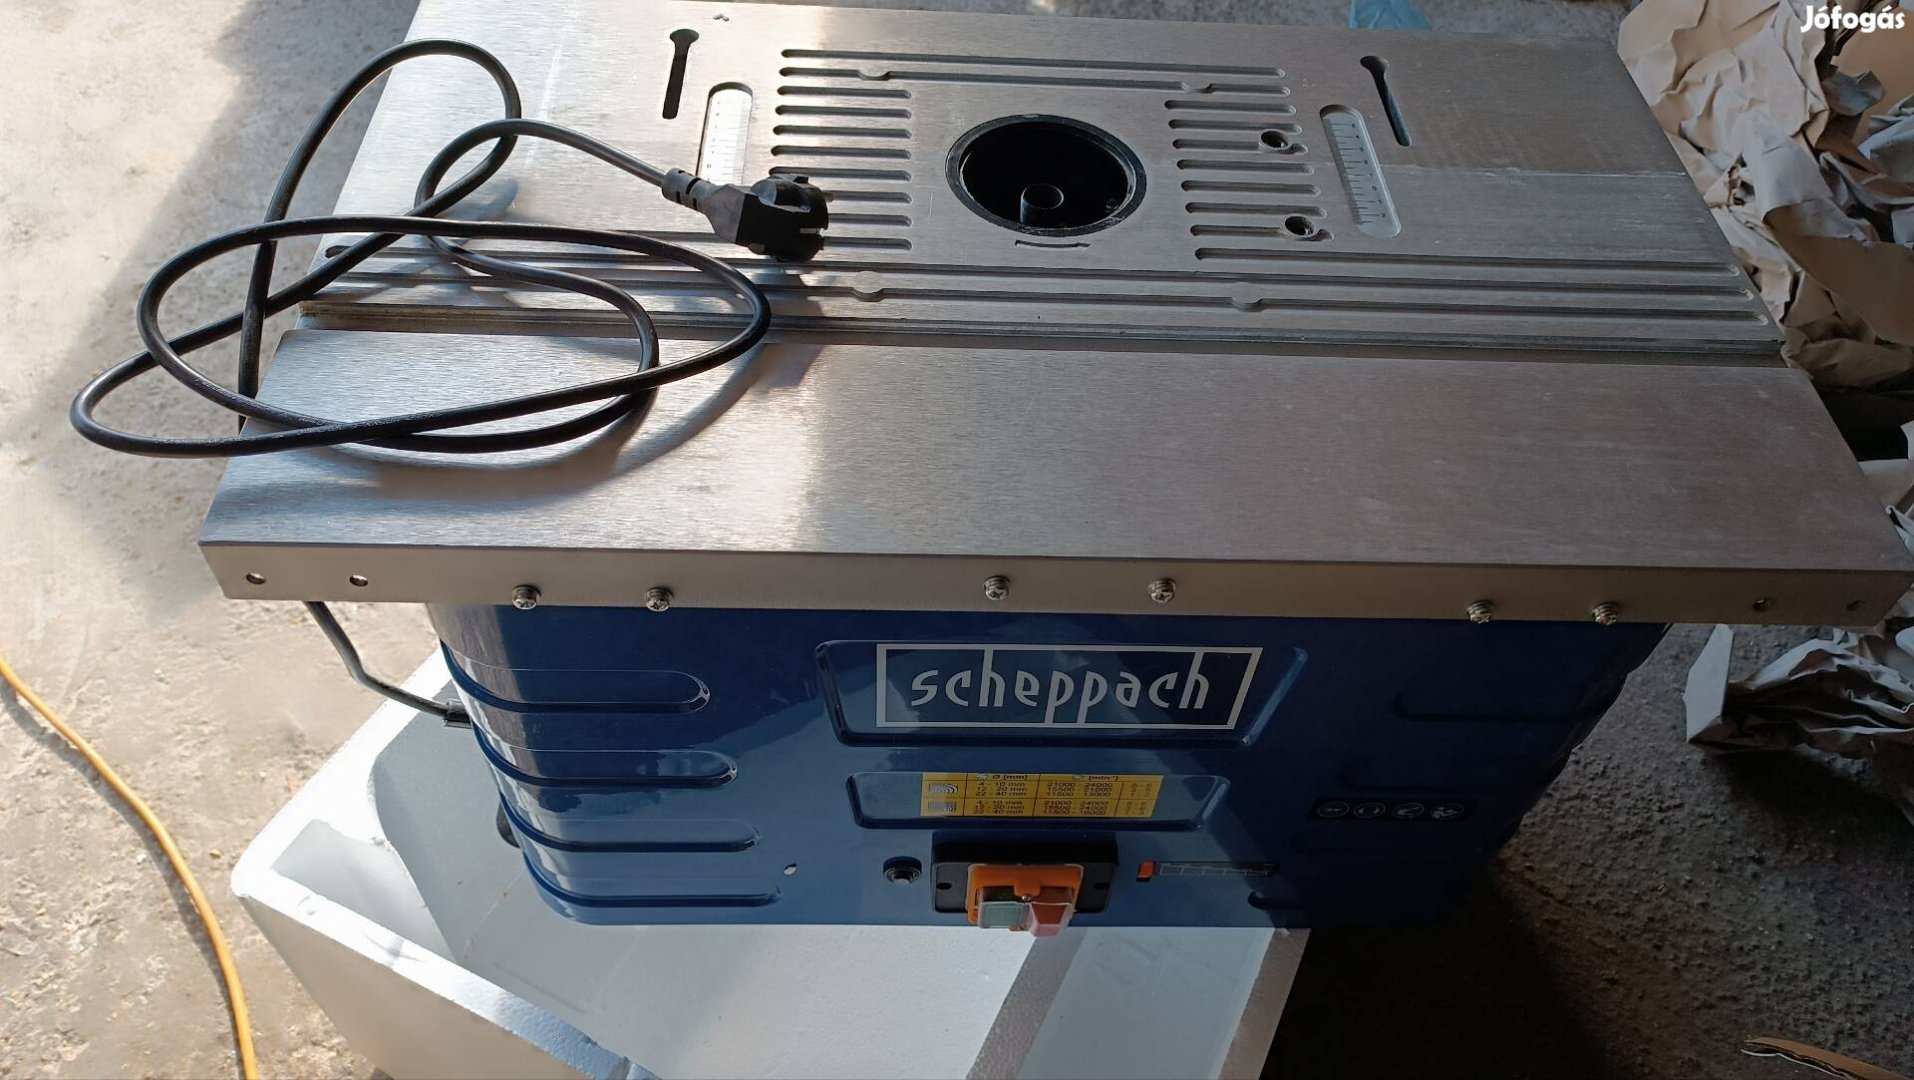 Scheppach hf60 asztali marógép. Tartozékok nélkül 